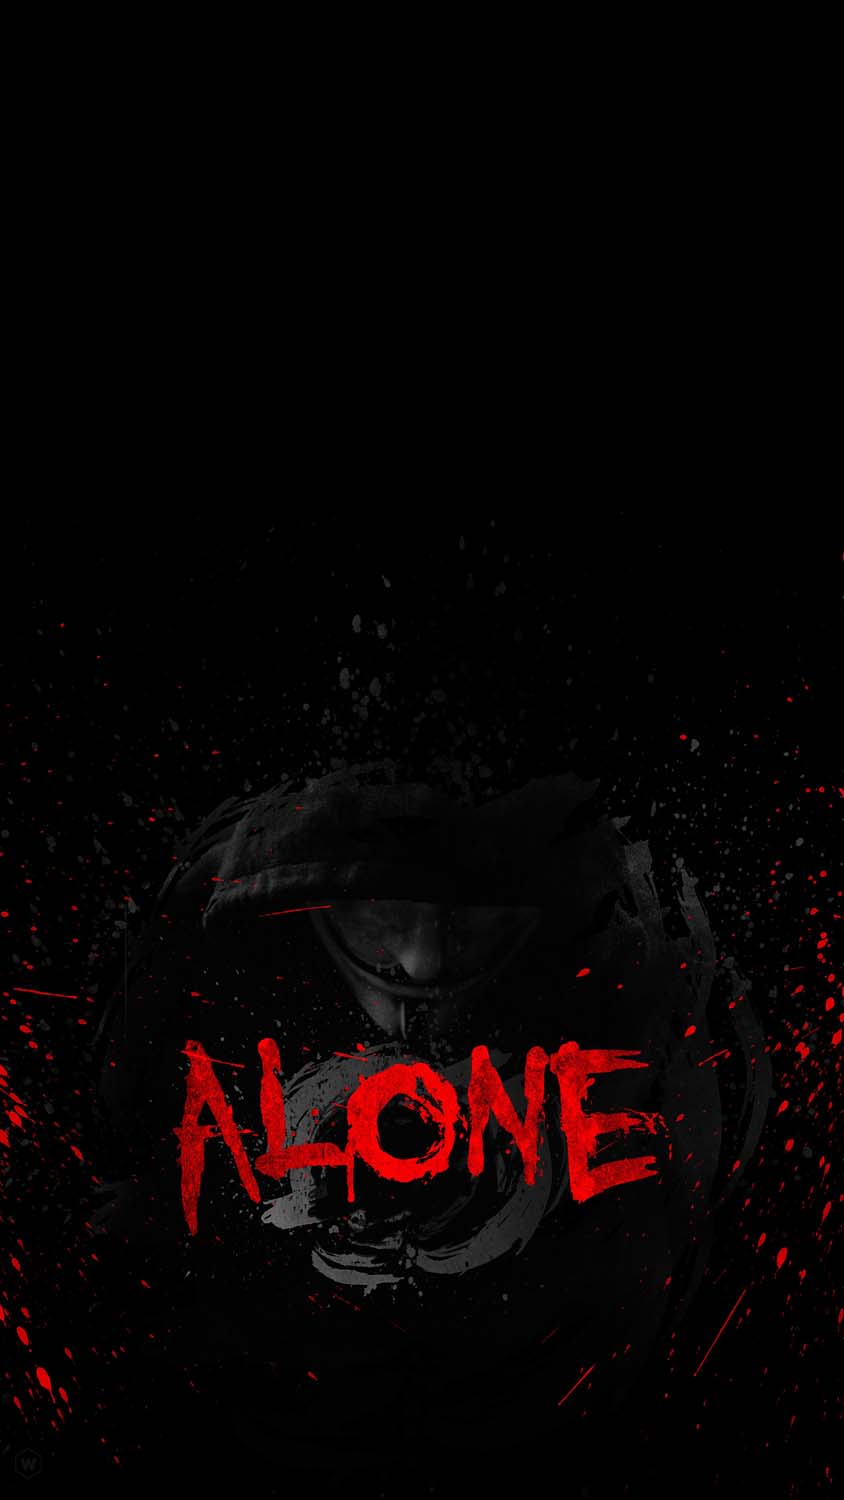 Alone In Dark IPhone Wallpaper HD - IPhone Wallpapers : iPhone Wallpapers